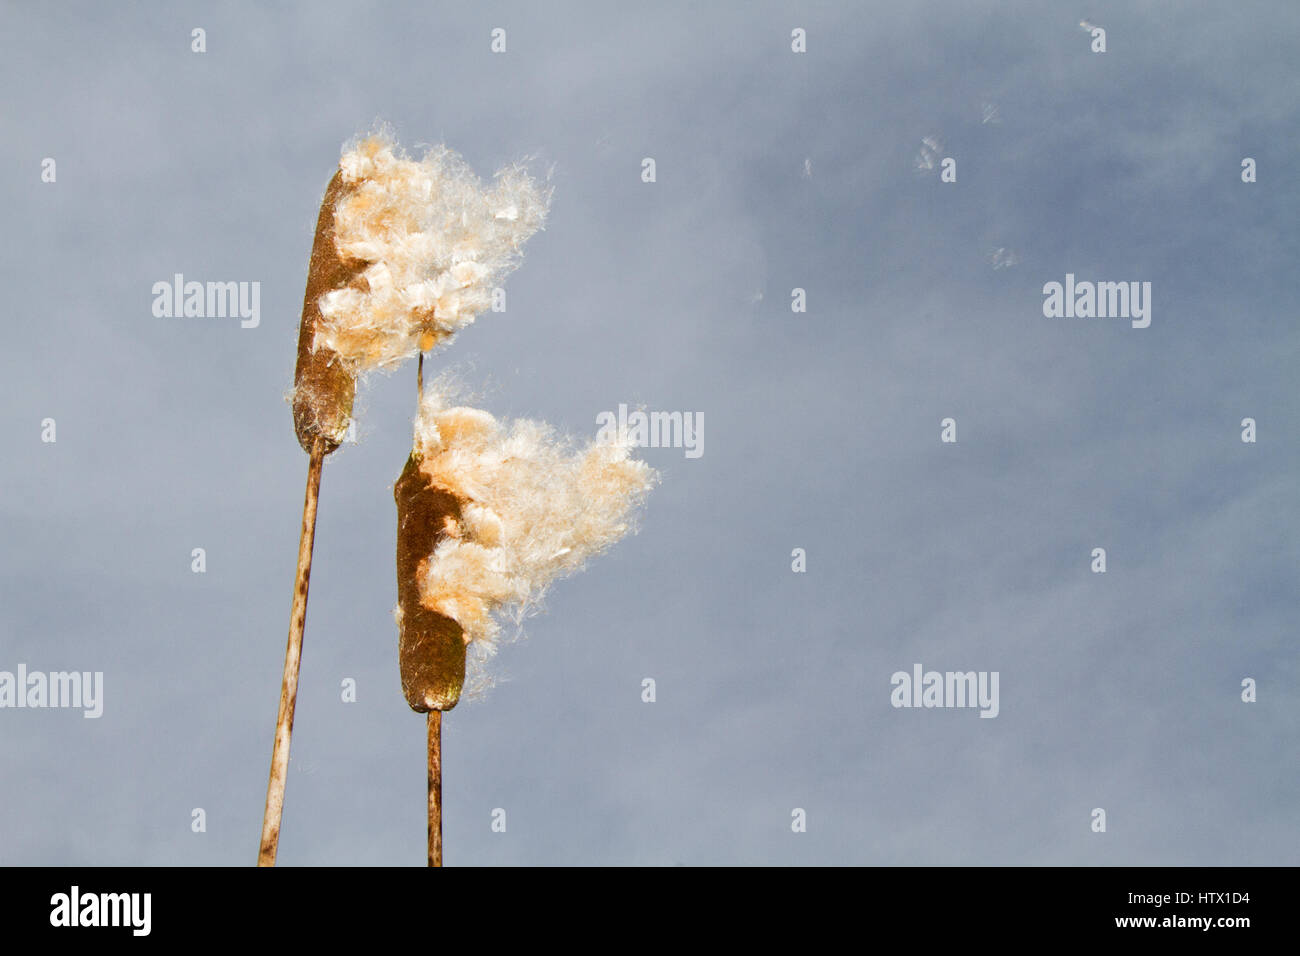 Wind Verbreitung flauschige Samen von breitblättrigen Rohrkolben Stockfoto